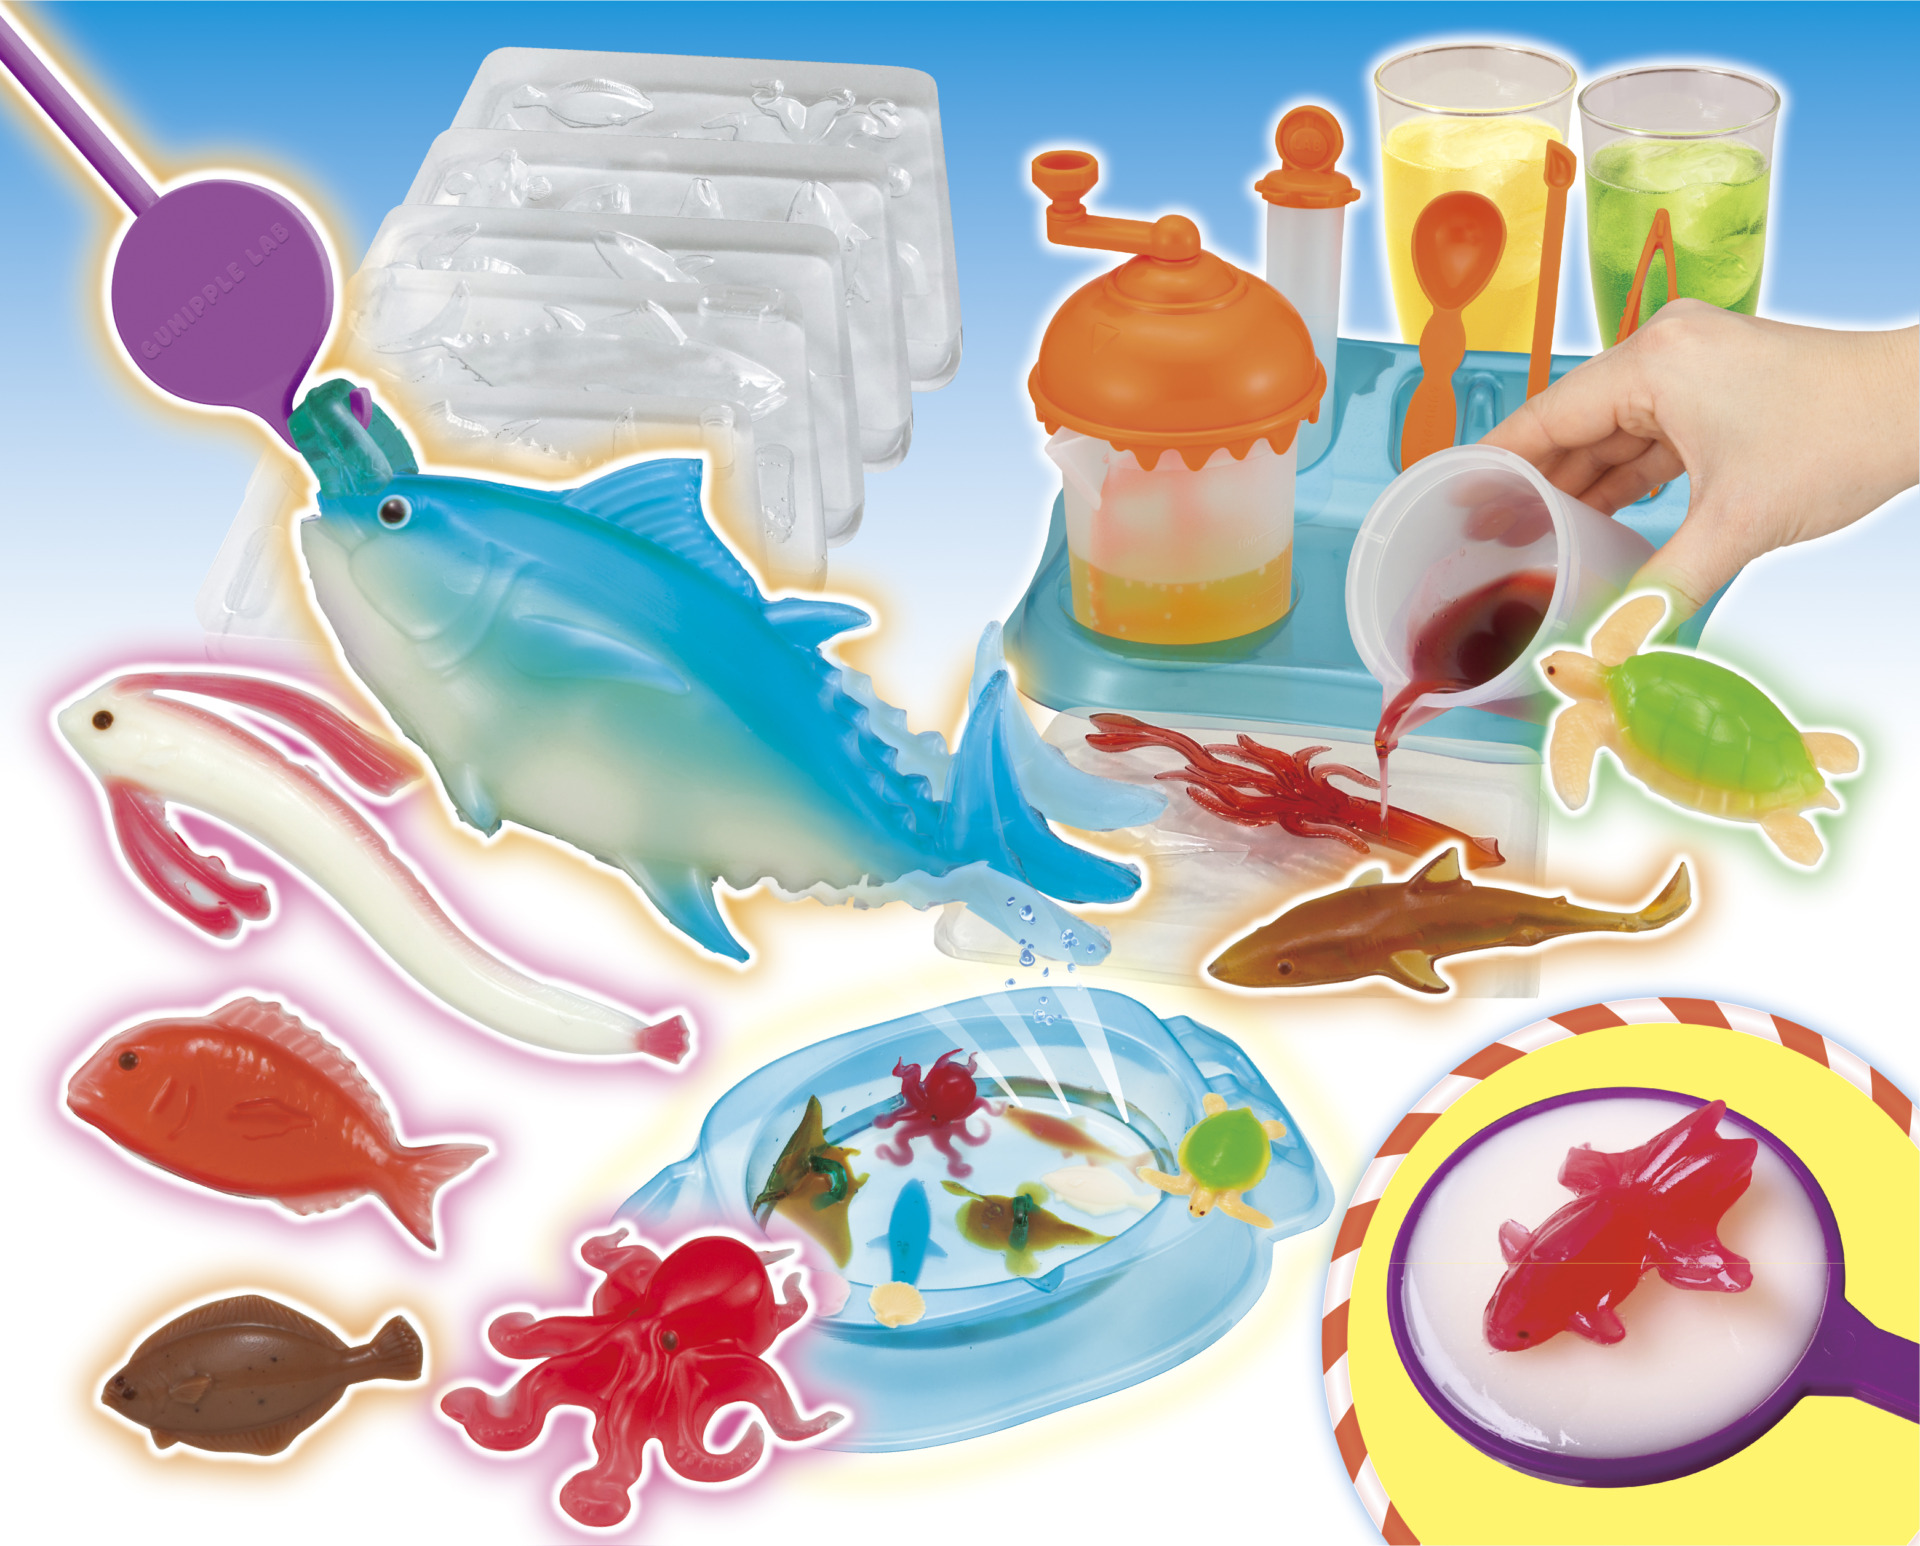 グミで魚釣りや金魚すくい まるごと食べれる料理などの面白グミが作れるクッキングトイ グミップルラボ に新商品が新登場 21年7月発売 おもちゃのニュース Toymim